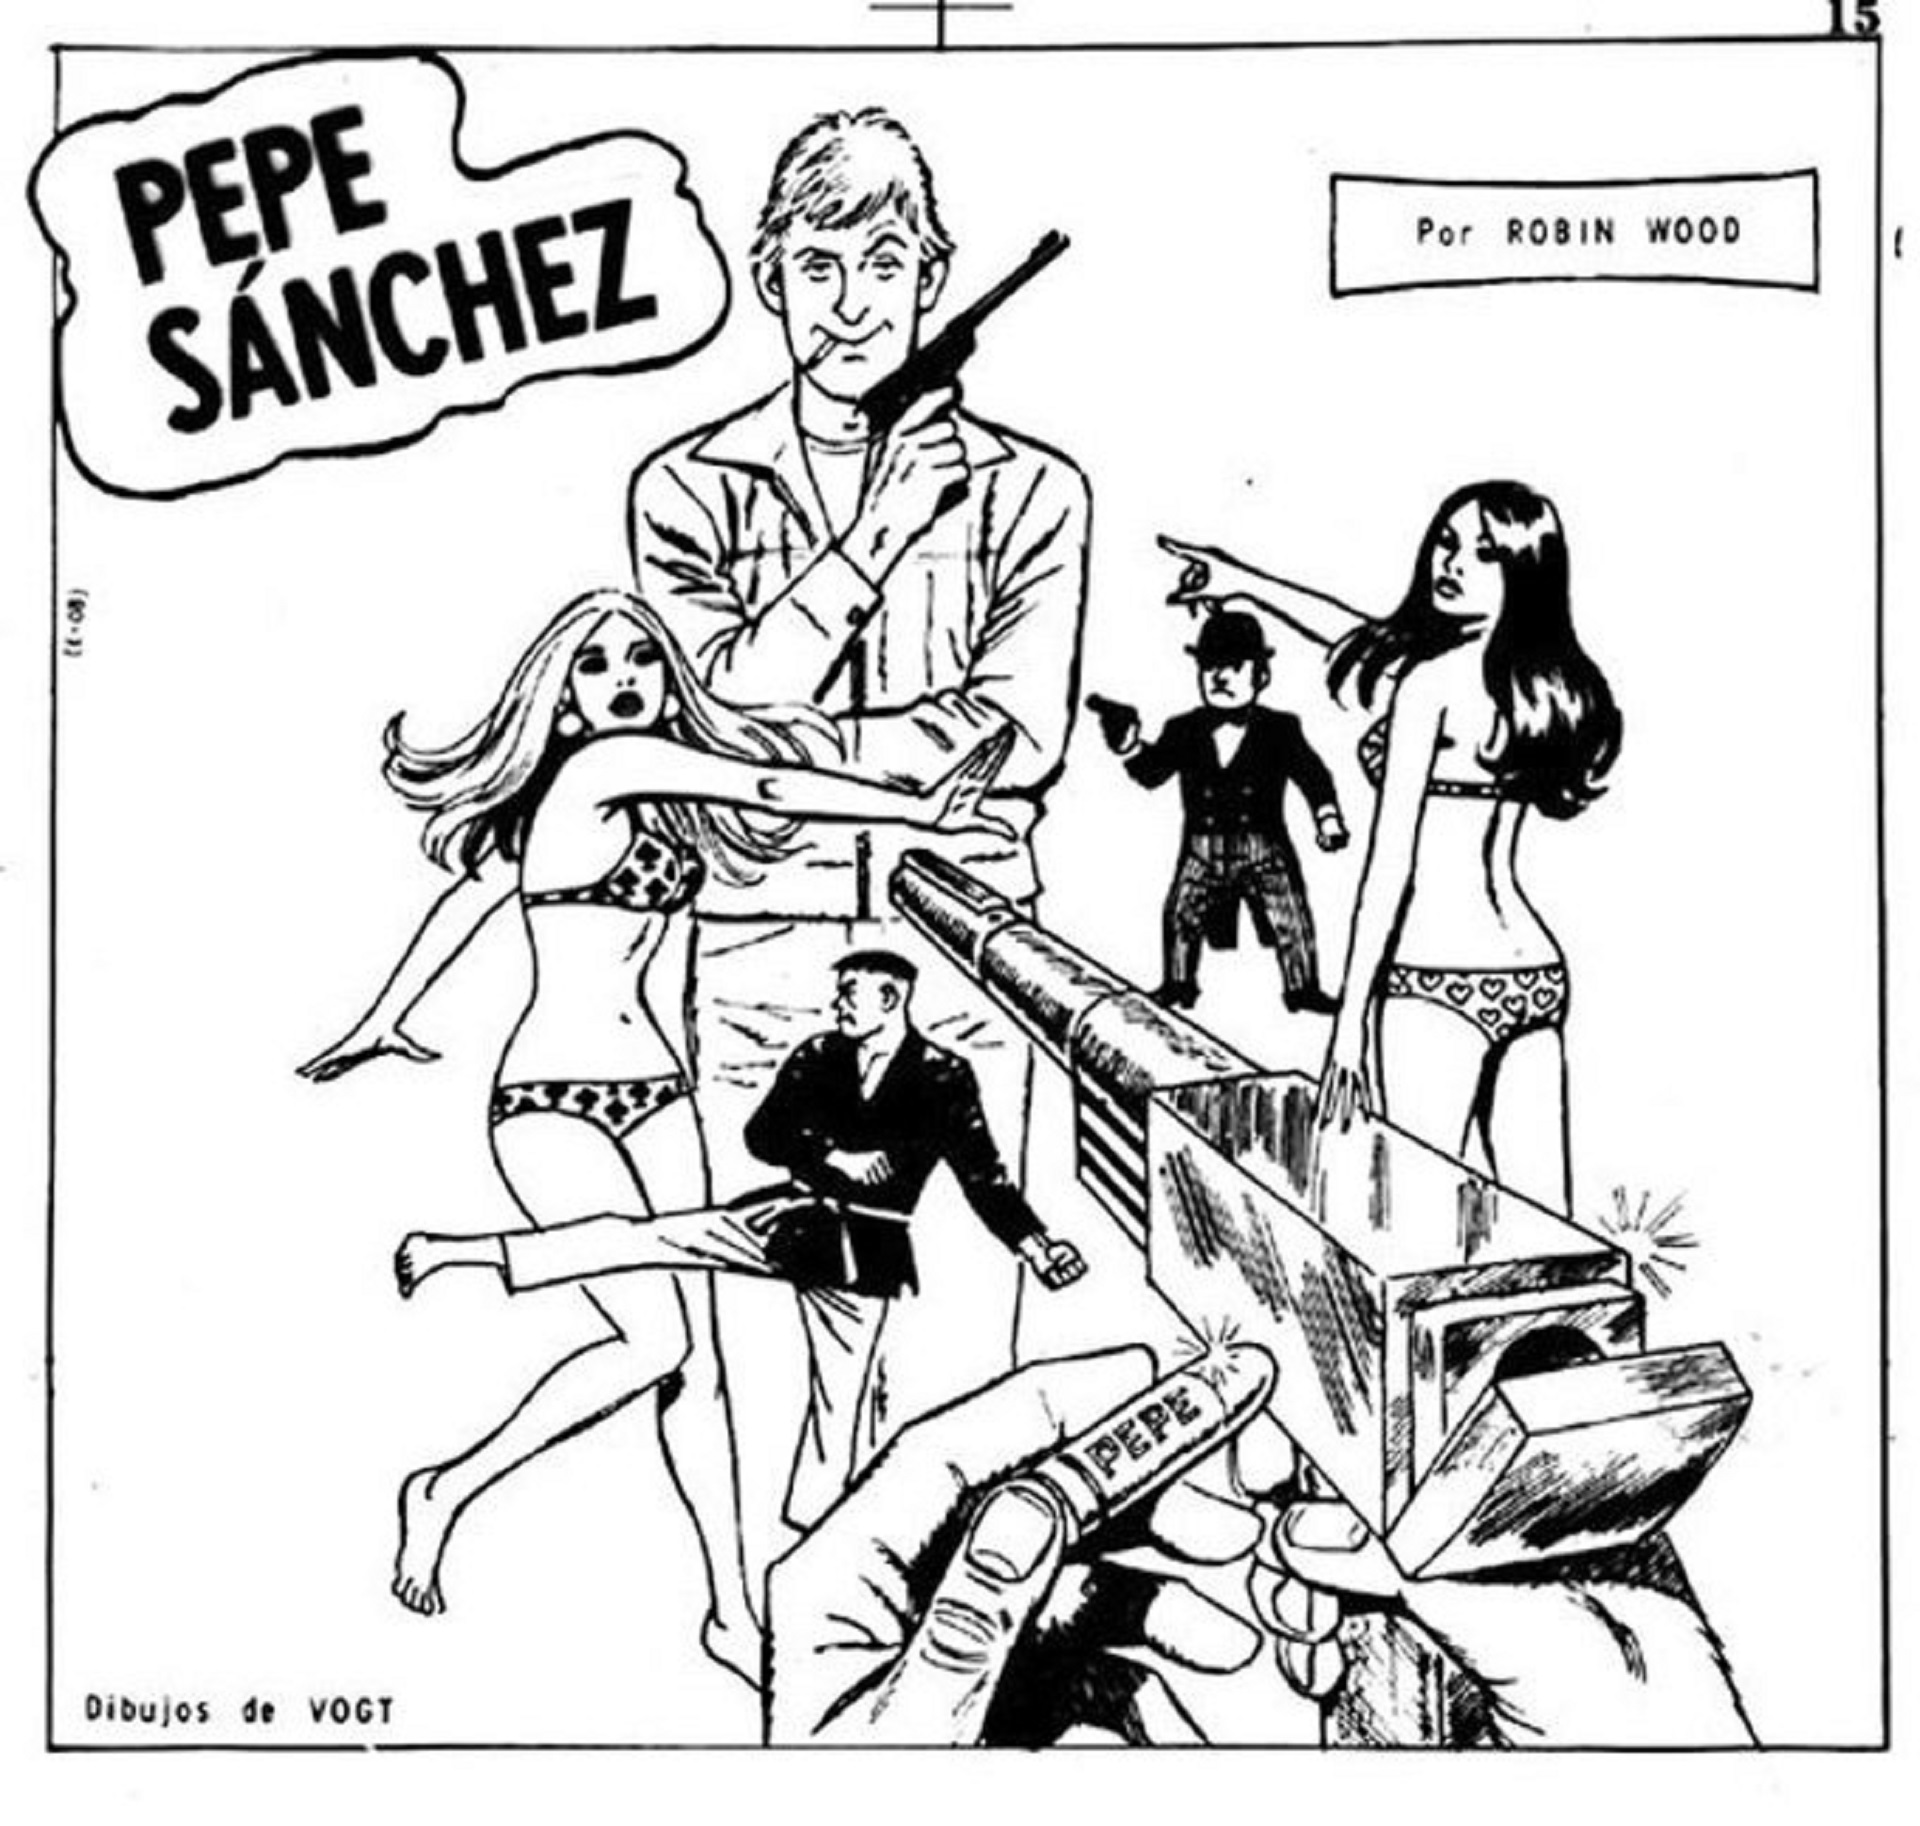 “Pepe Sánchez"